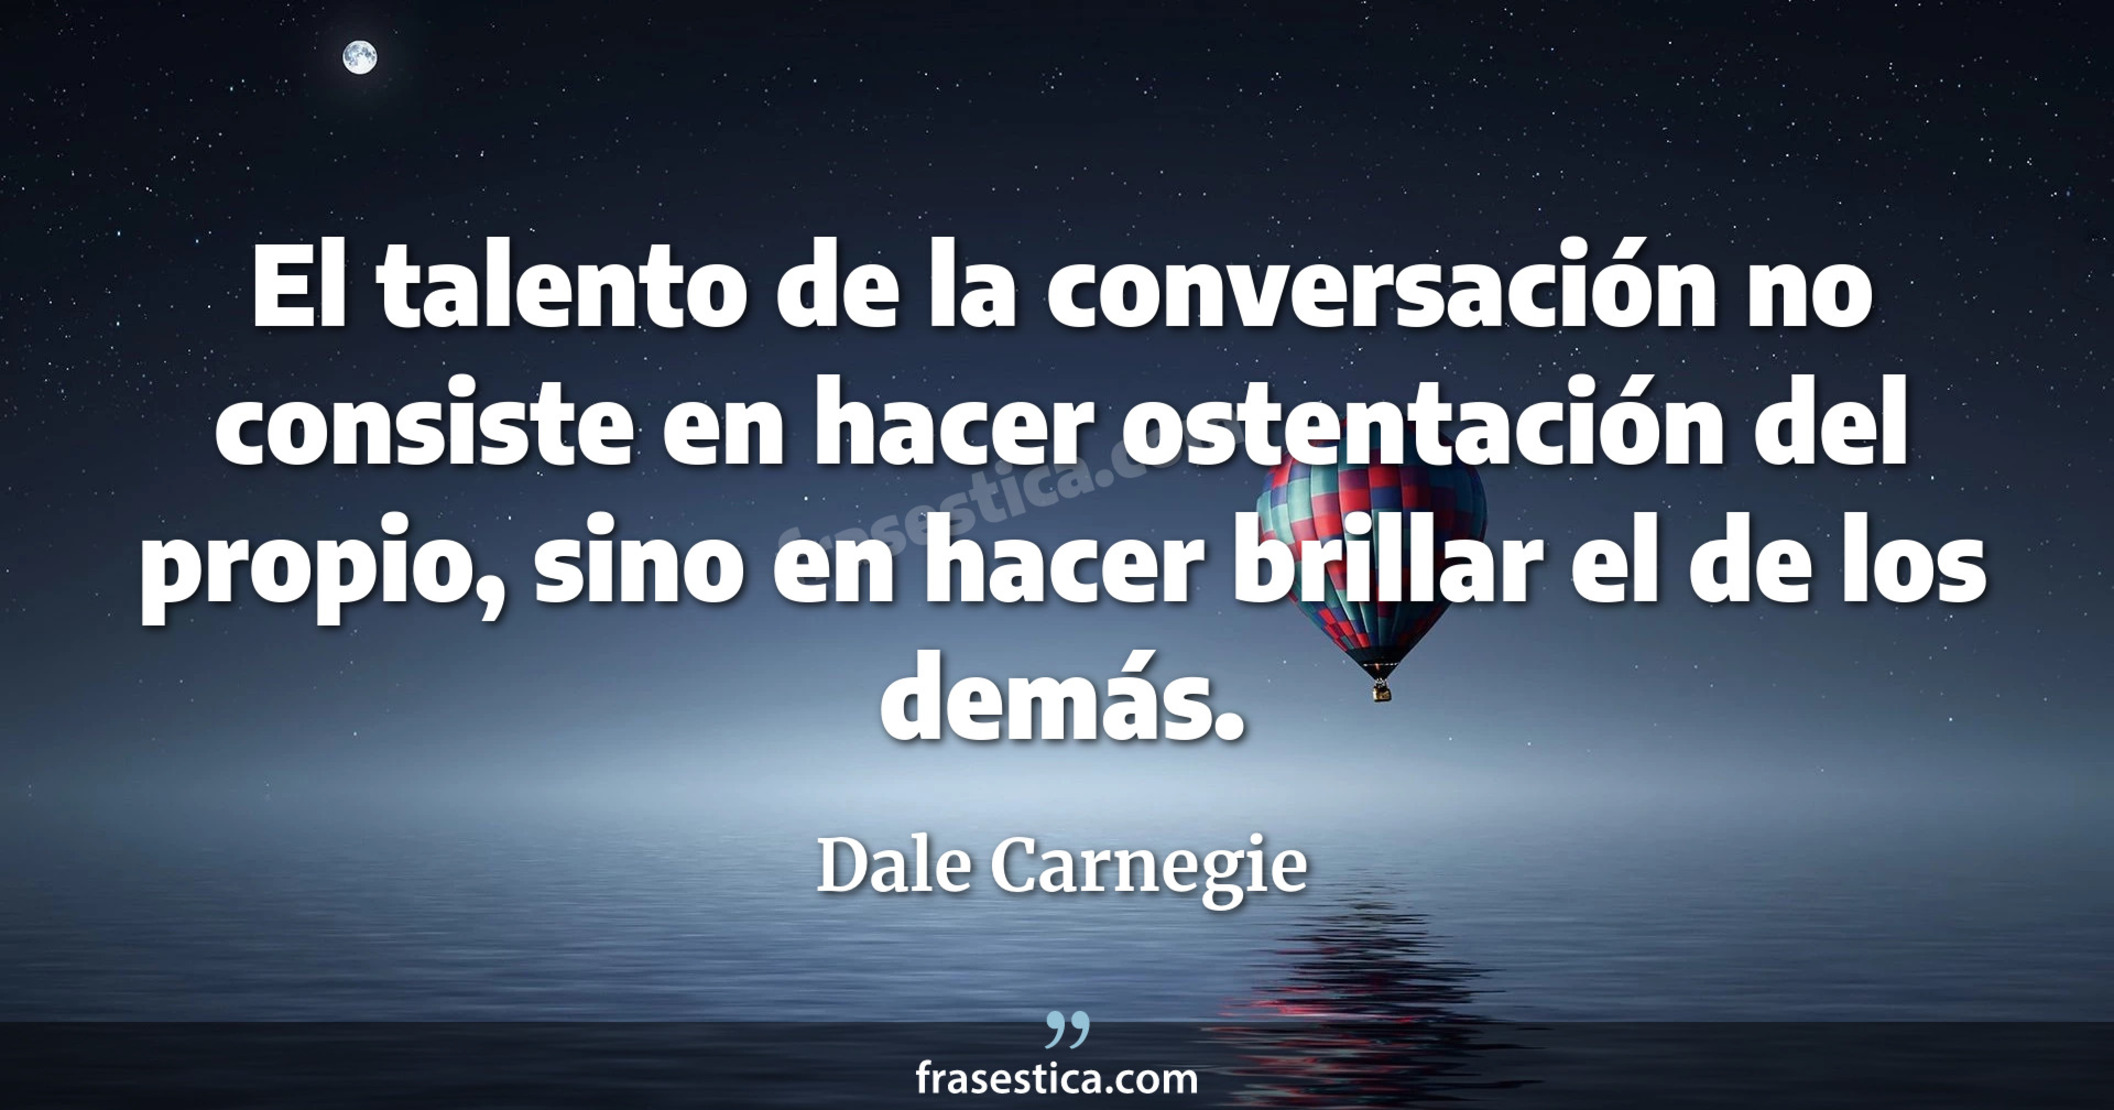 El talento de la conversación no consiste en hacer ostentación del propio, sino en hacer brillar el de los demás. - Dale Carnegie